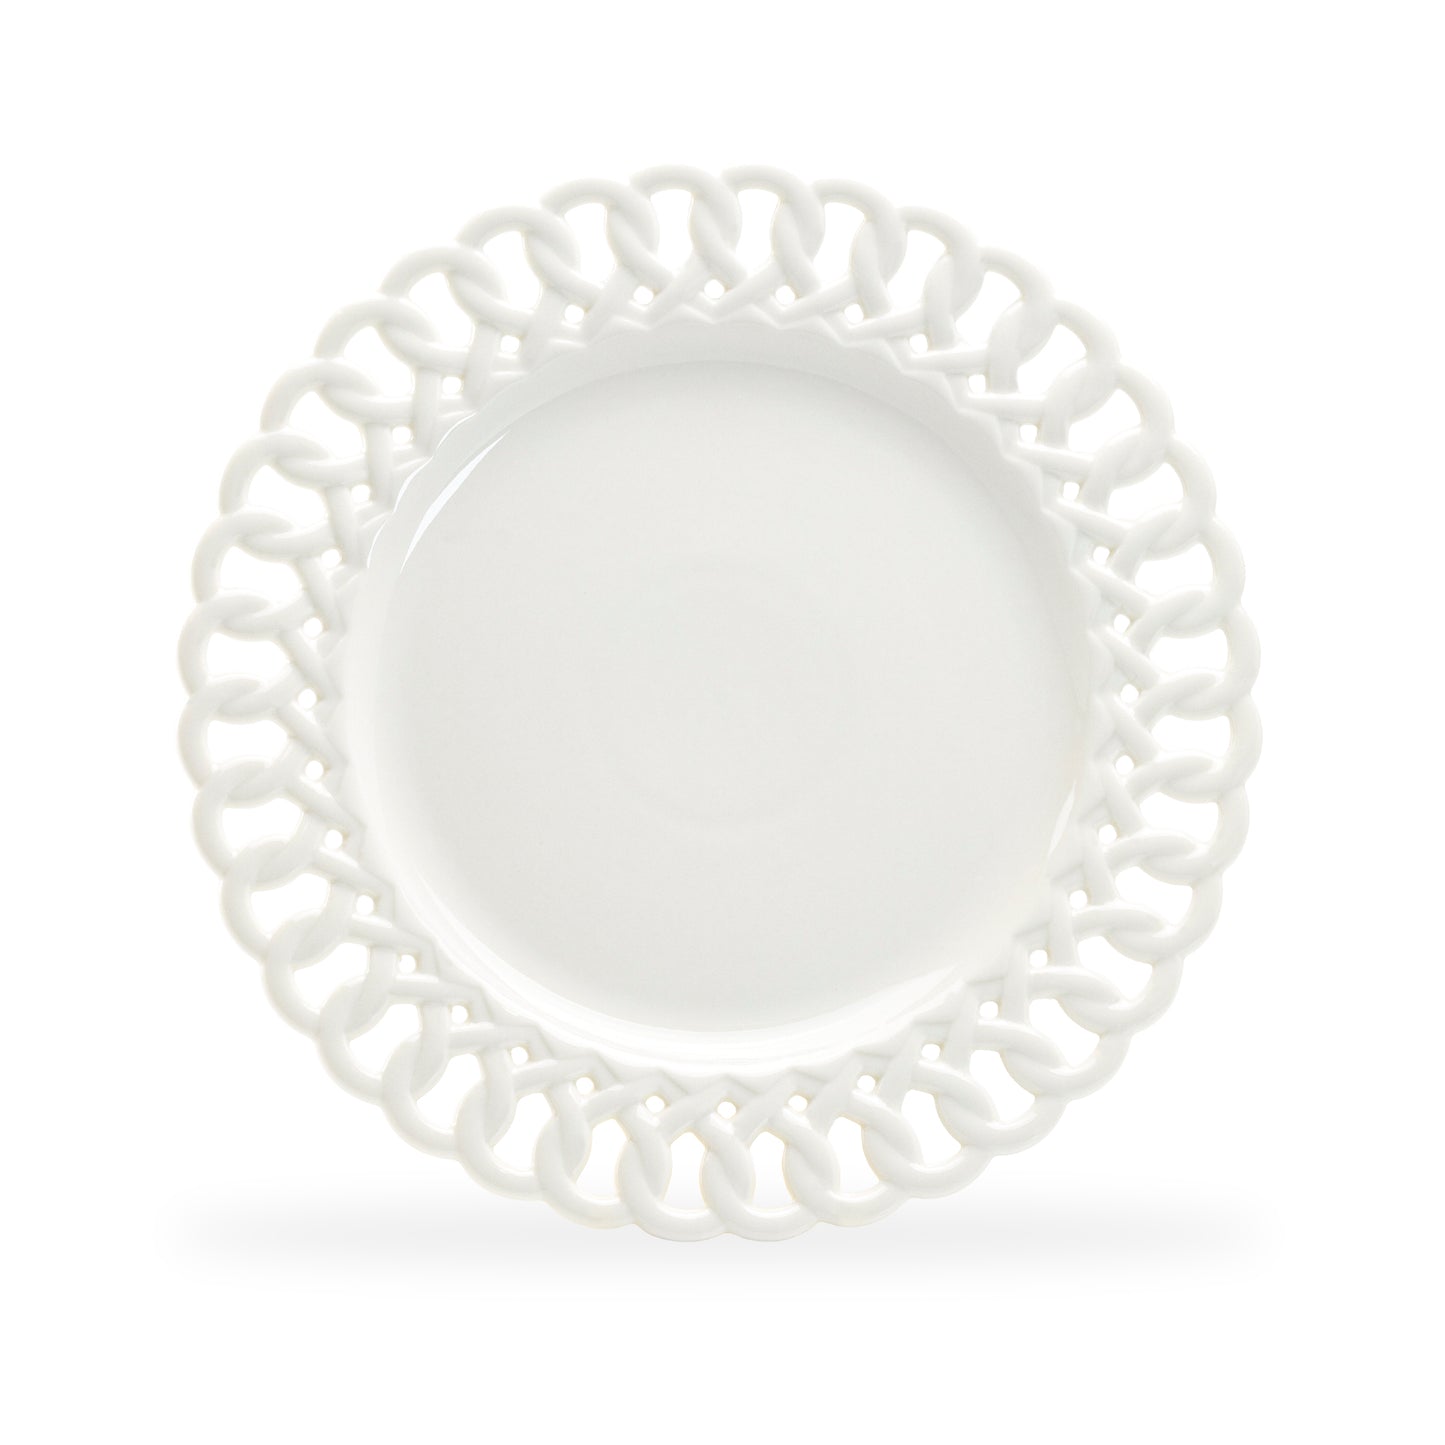 White Heirloom Fine Porcelain Dinner Plate